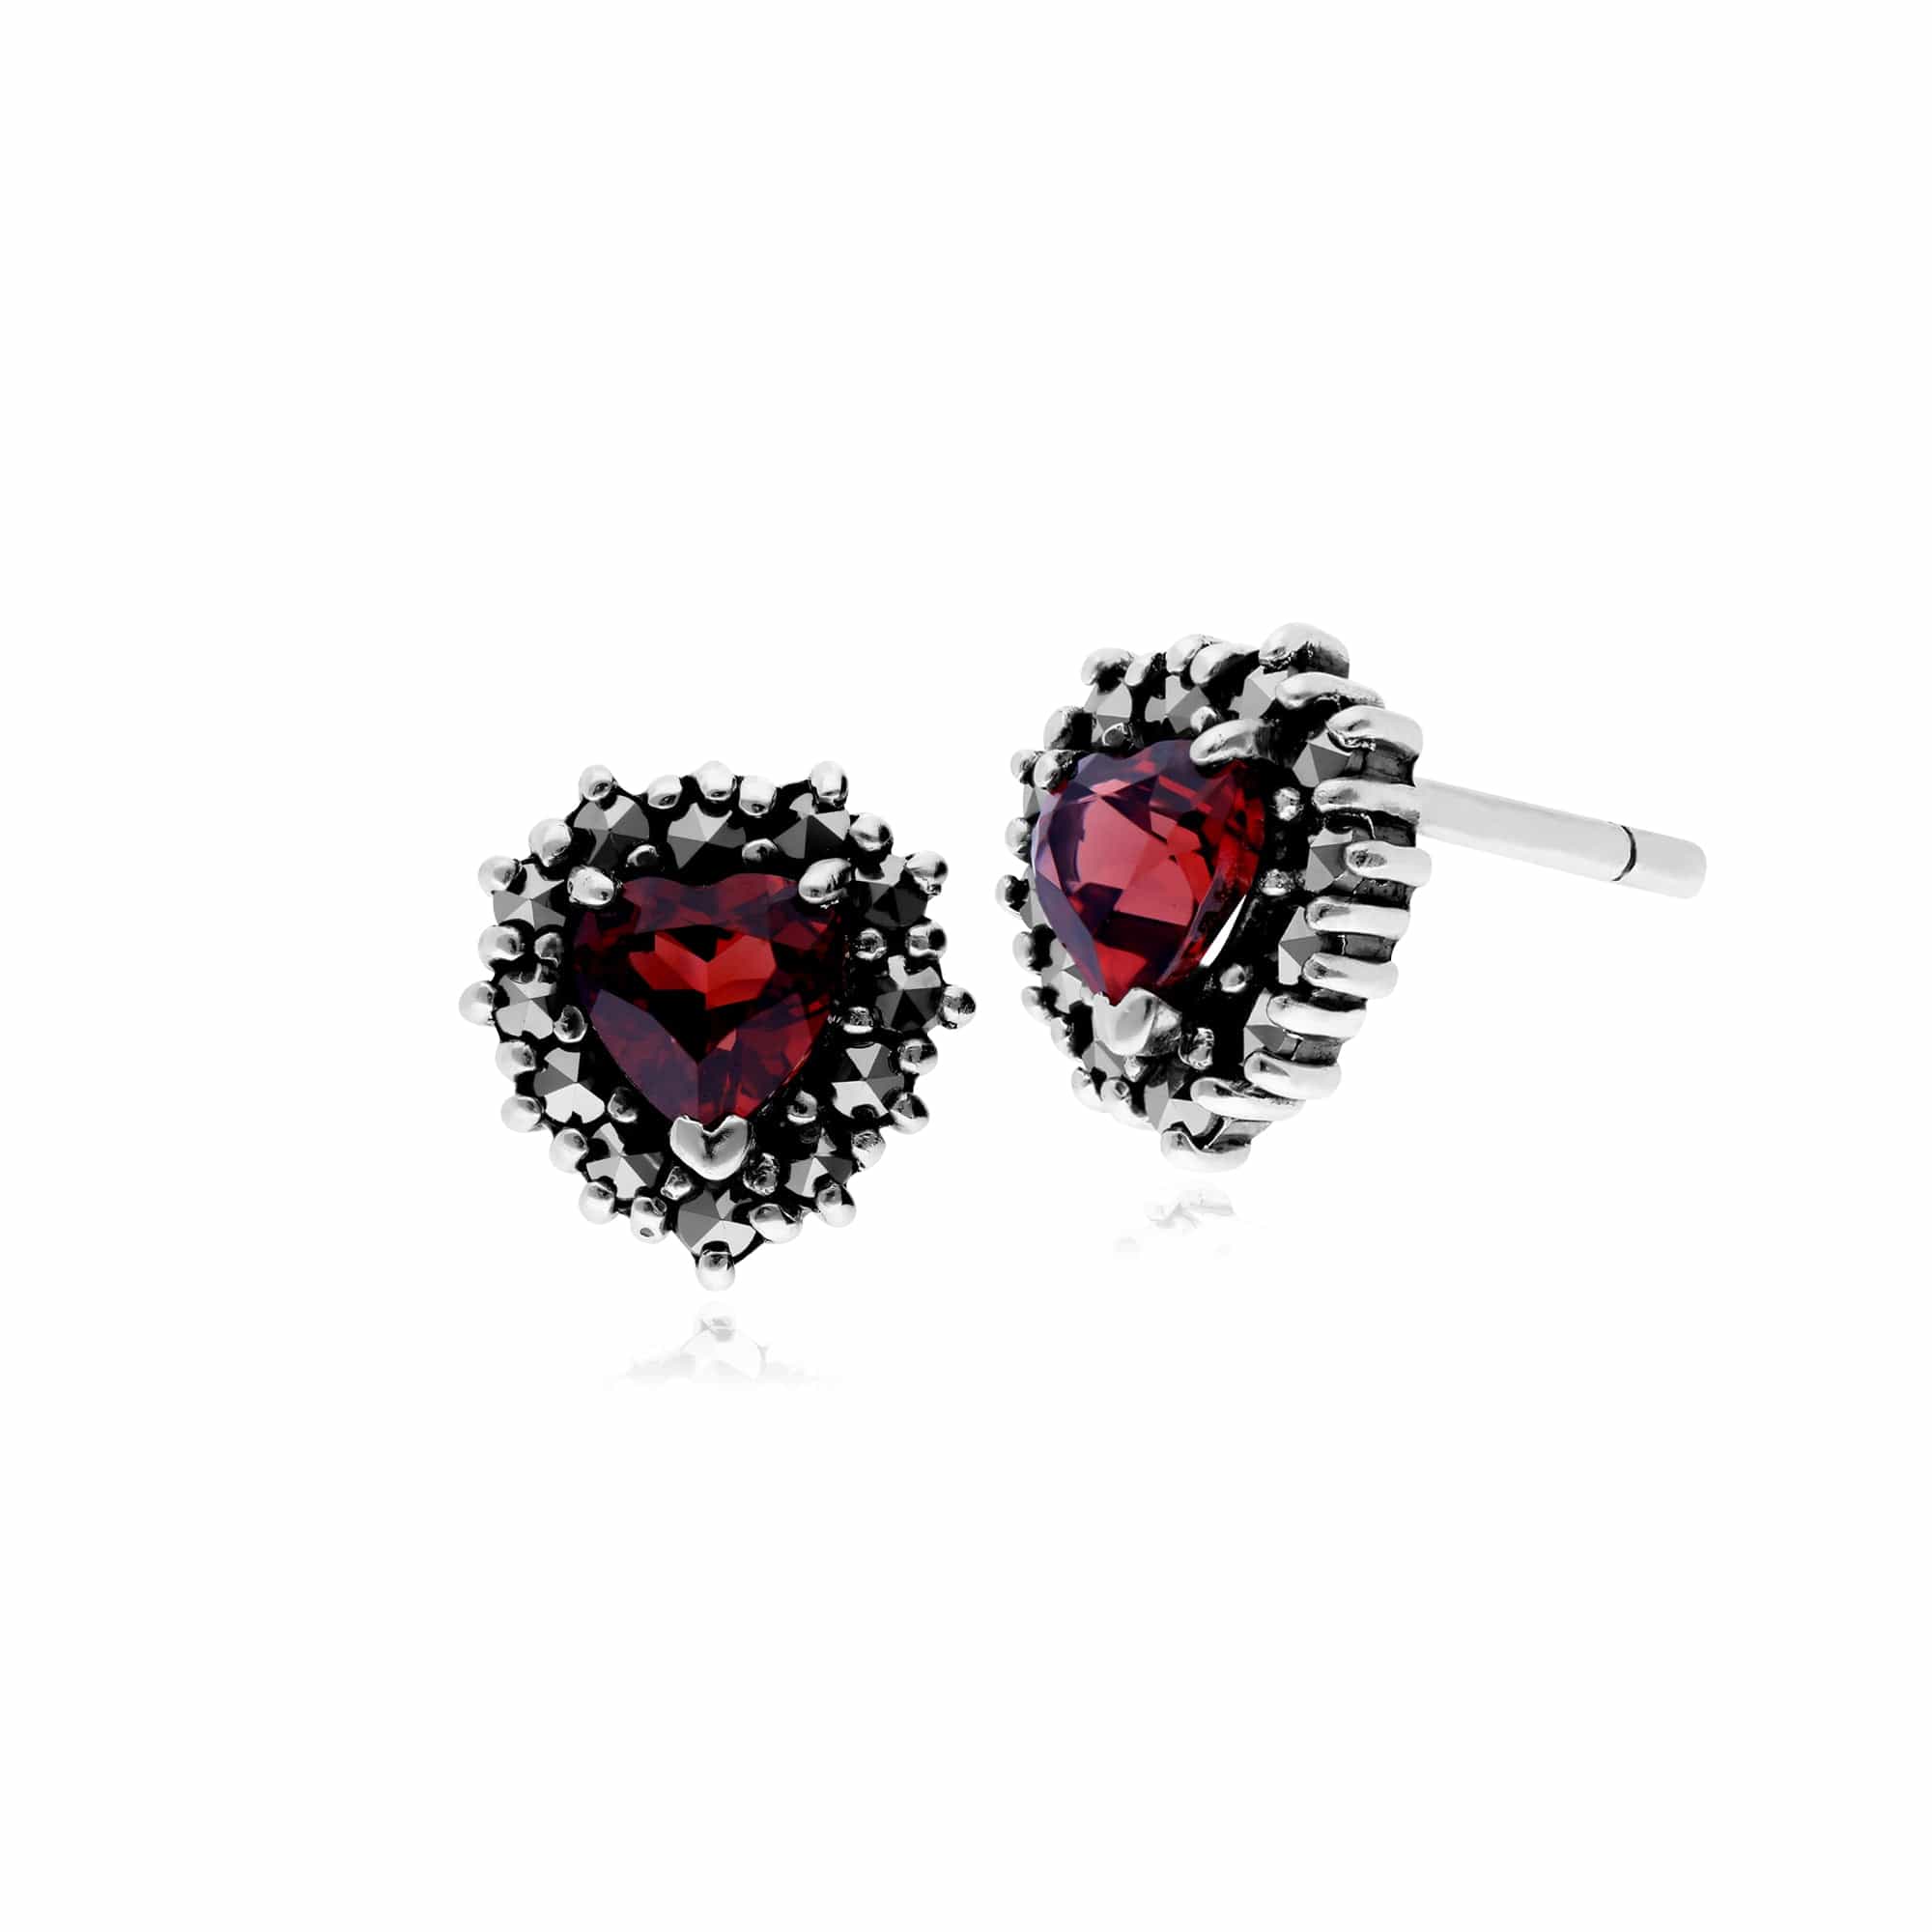 214E725705925-214P301203925 Art Deco Style Garnet & Marcasite Heart Stud Earrings & Necklace Set in 925 Sterling Silver 2